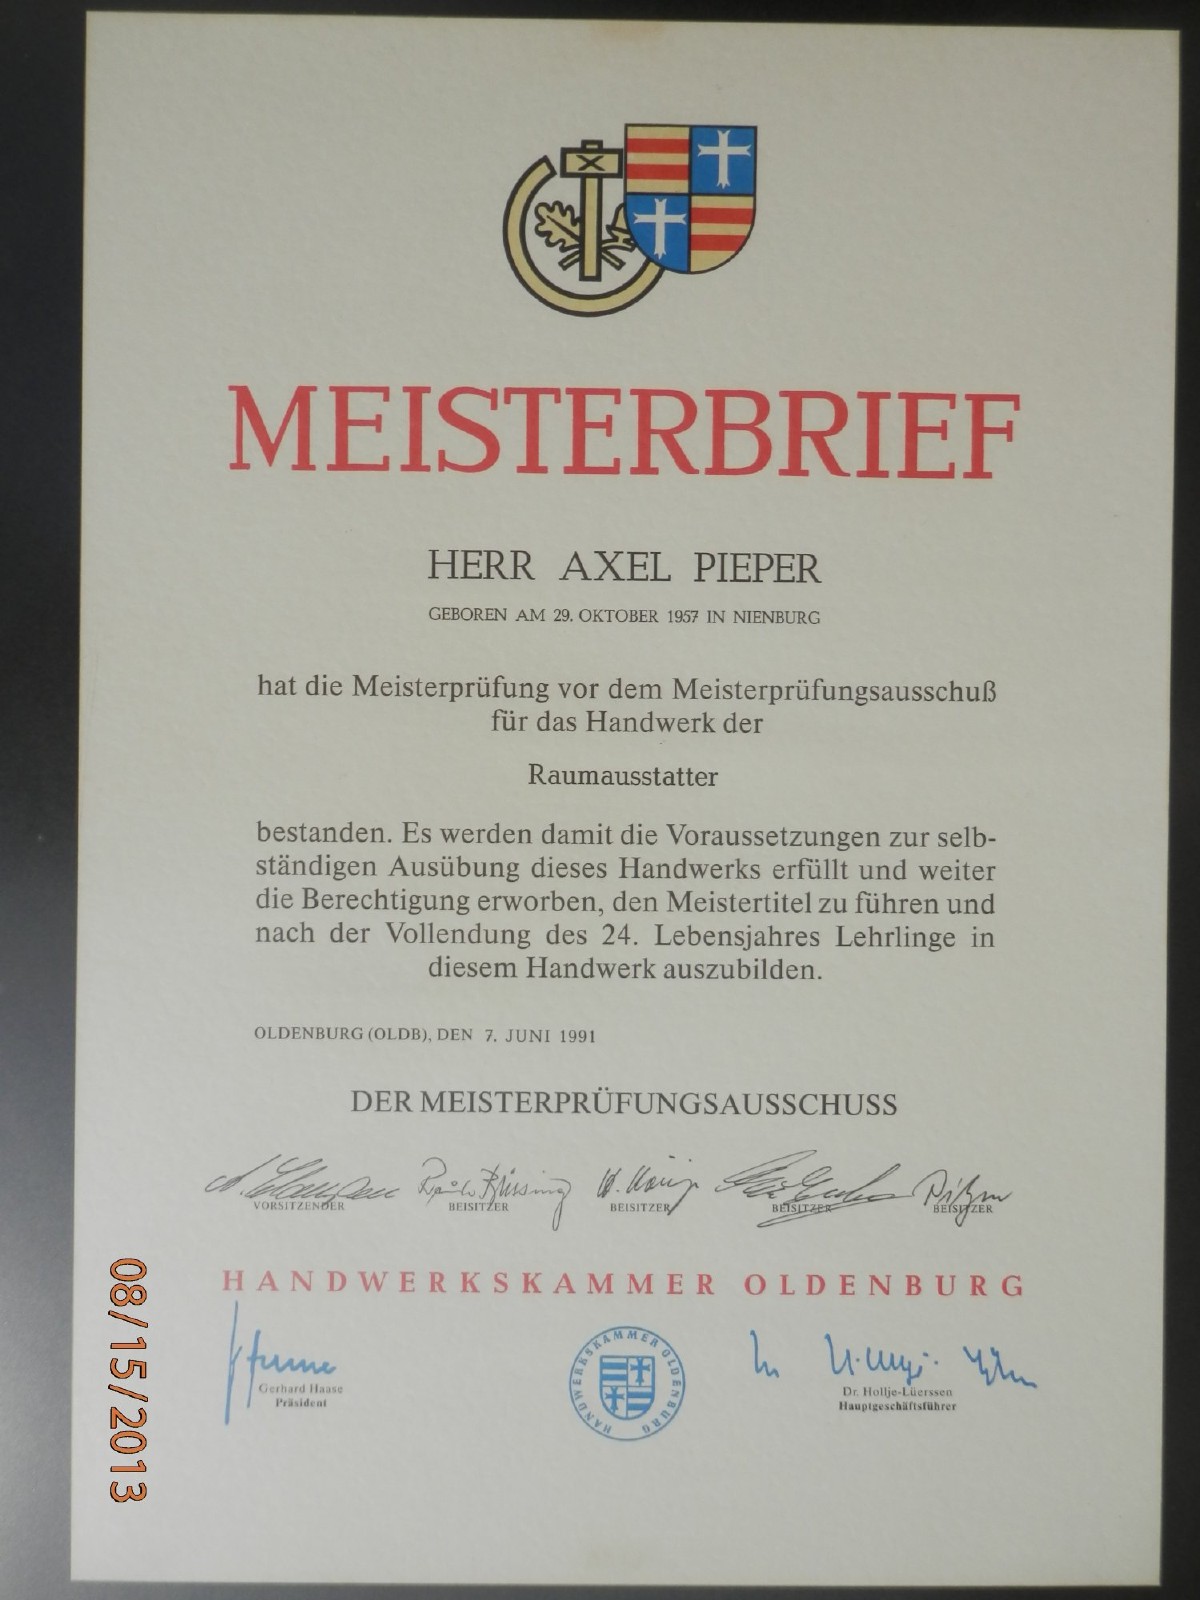 Meisterbrief von Axel Pieper